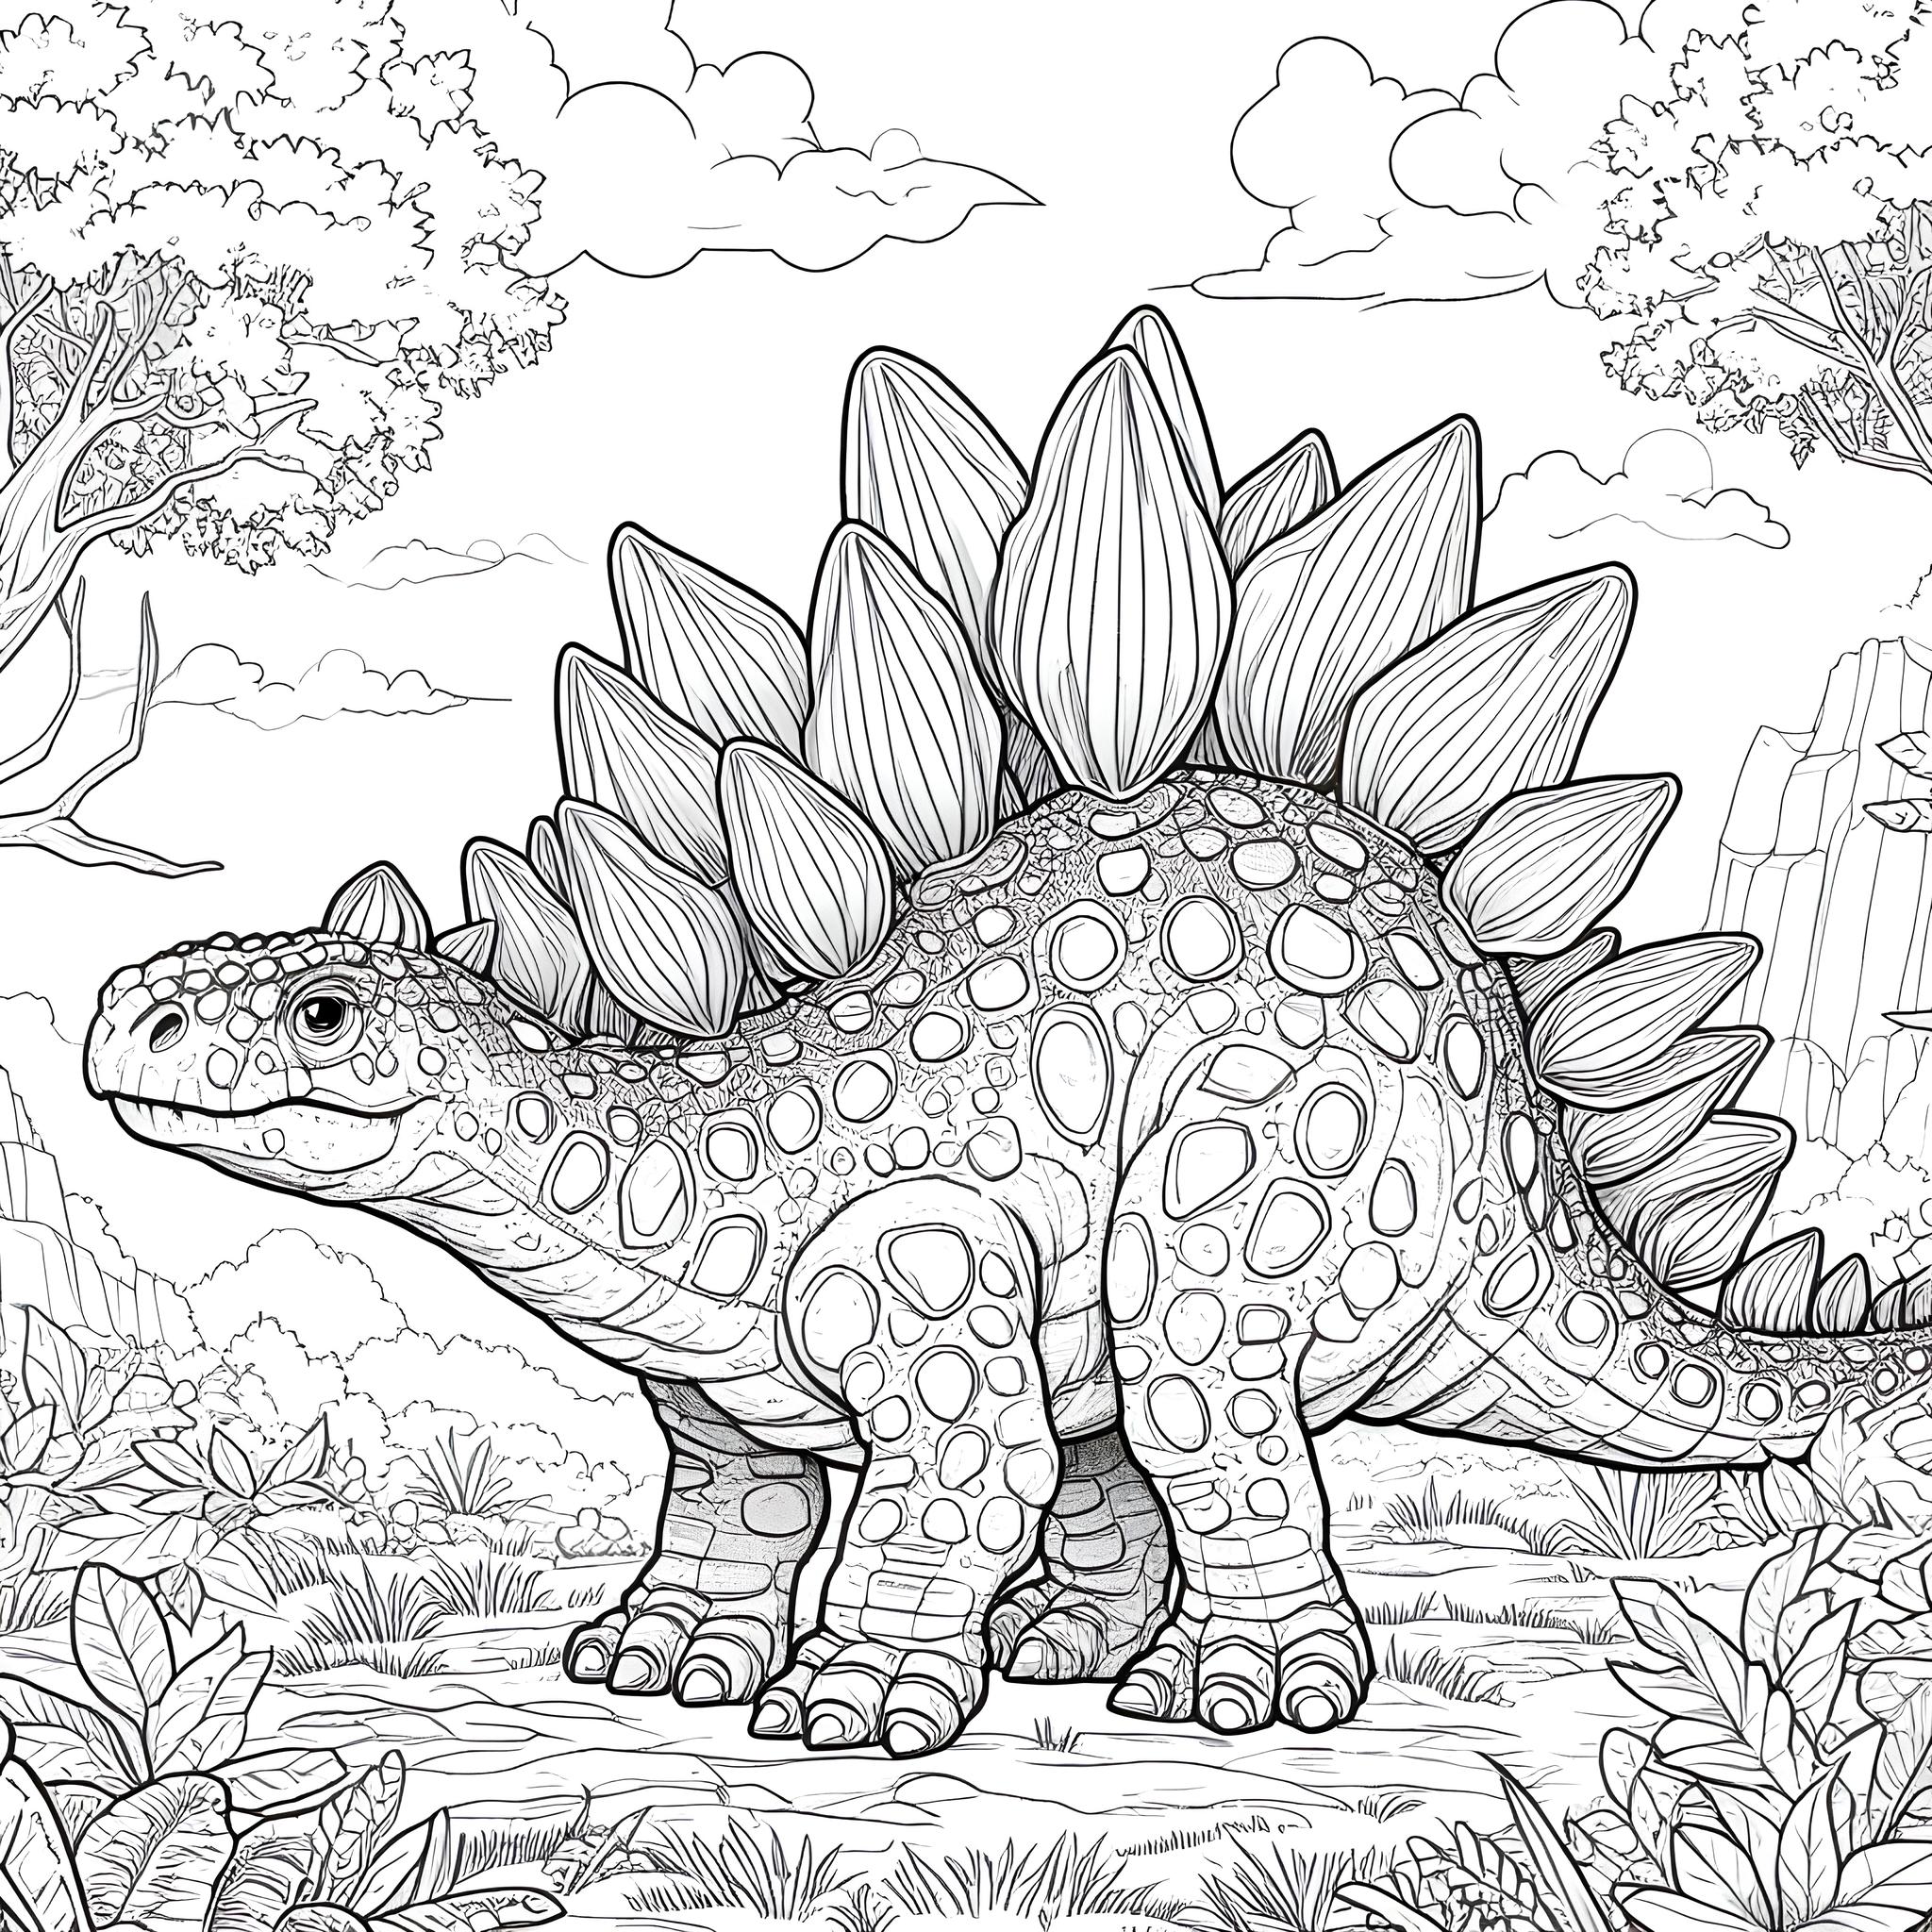 Ausmalbild: Stegosaurus